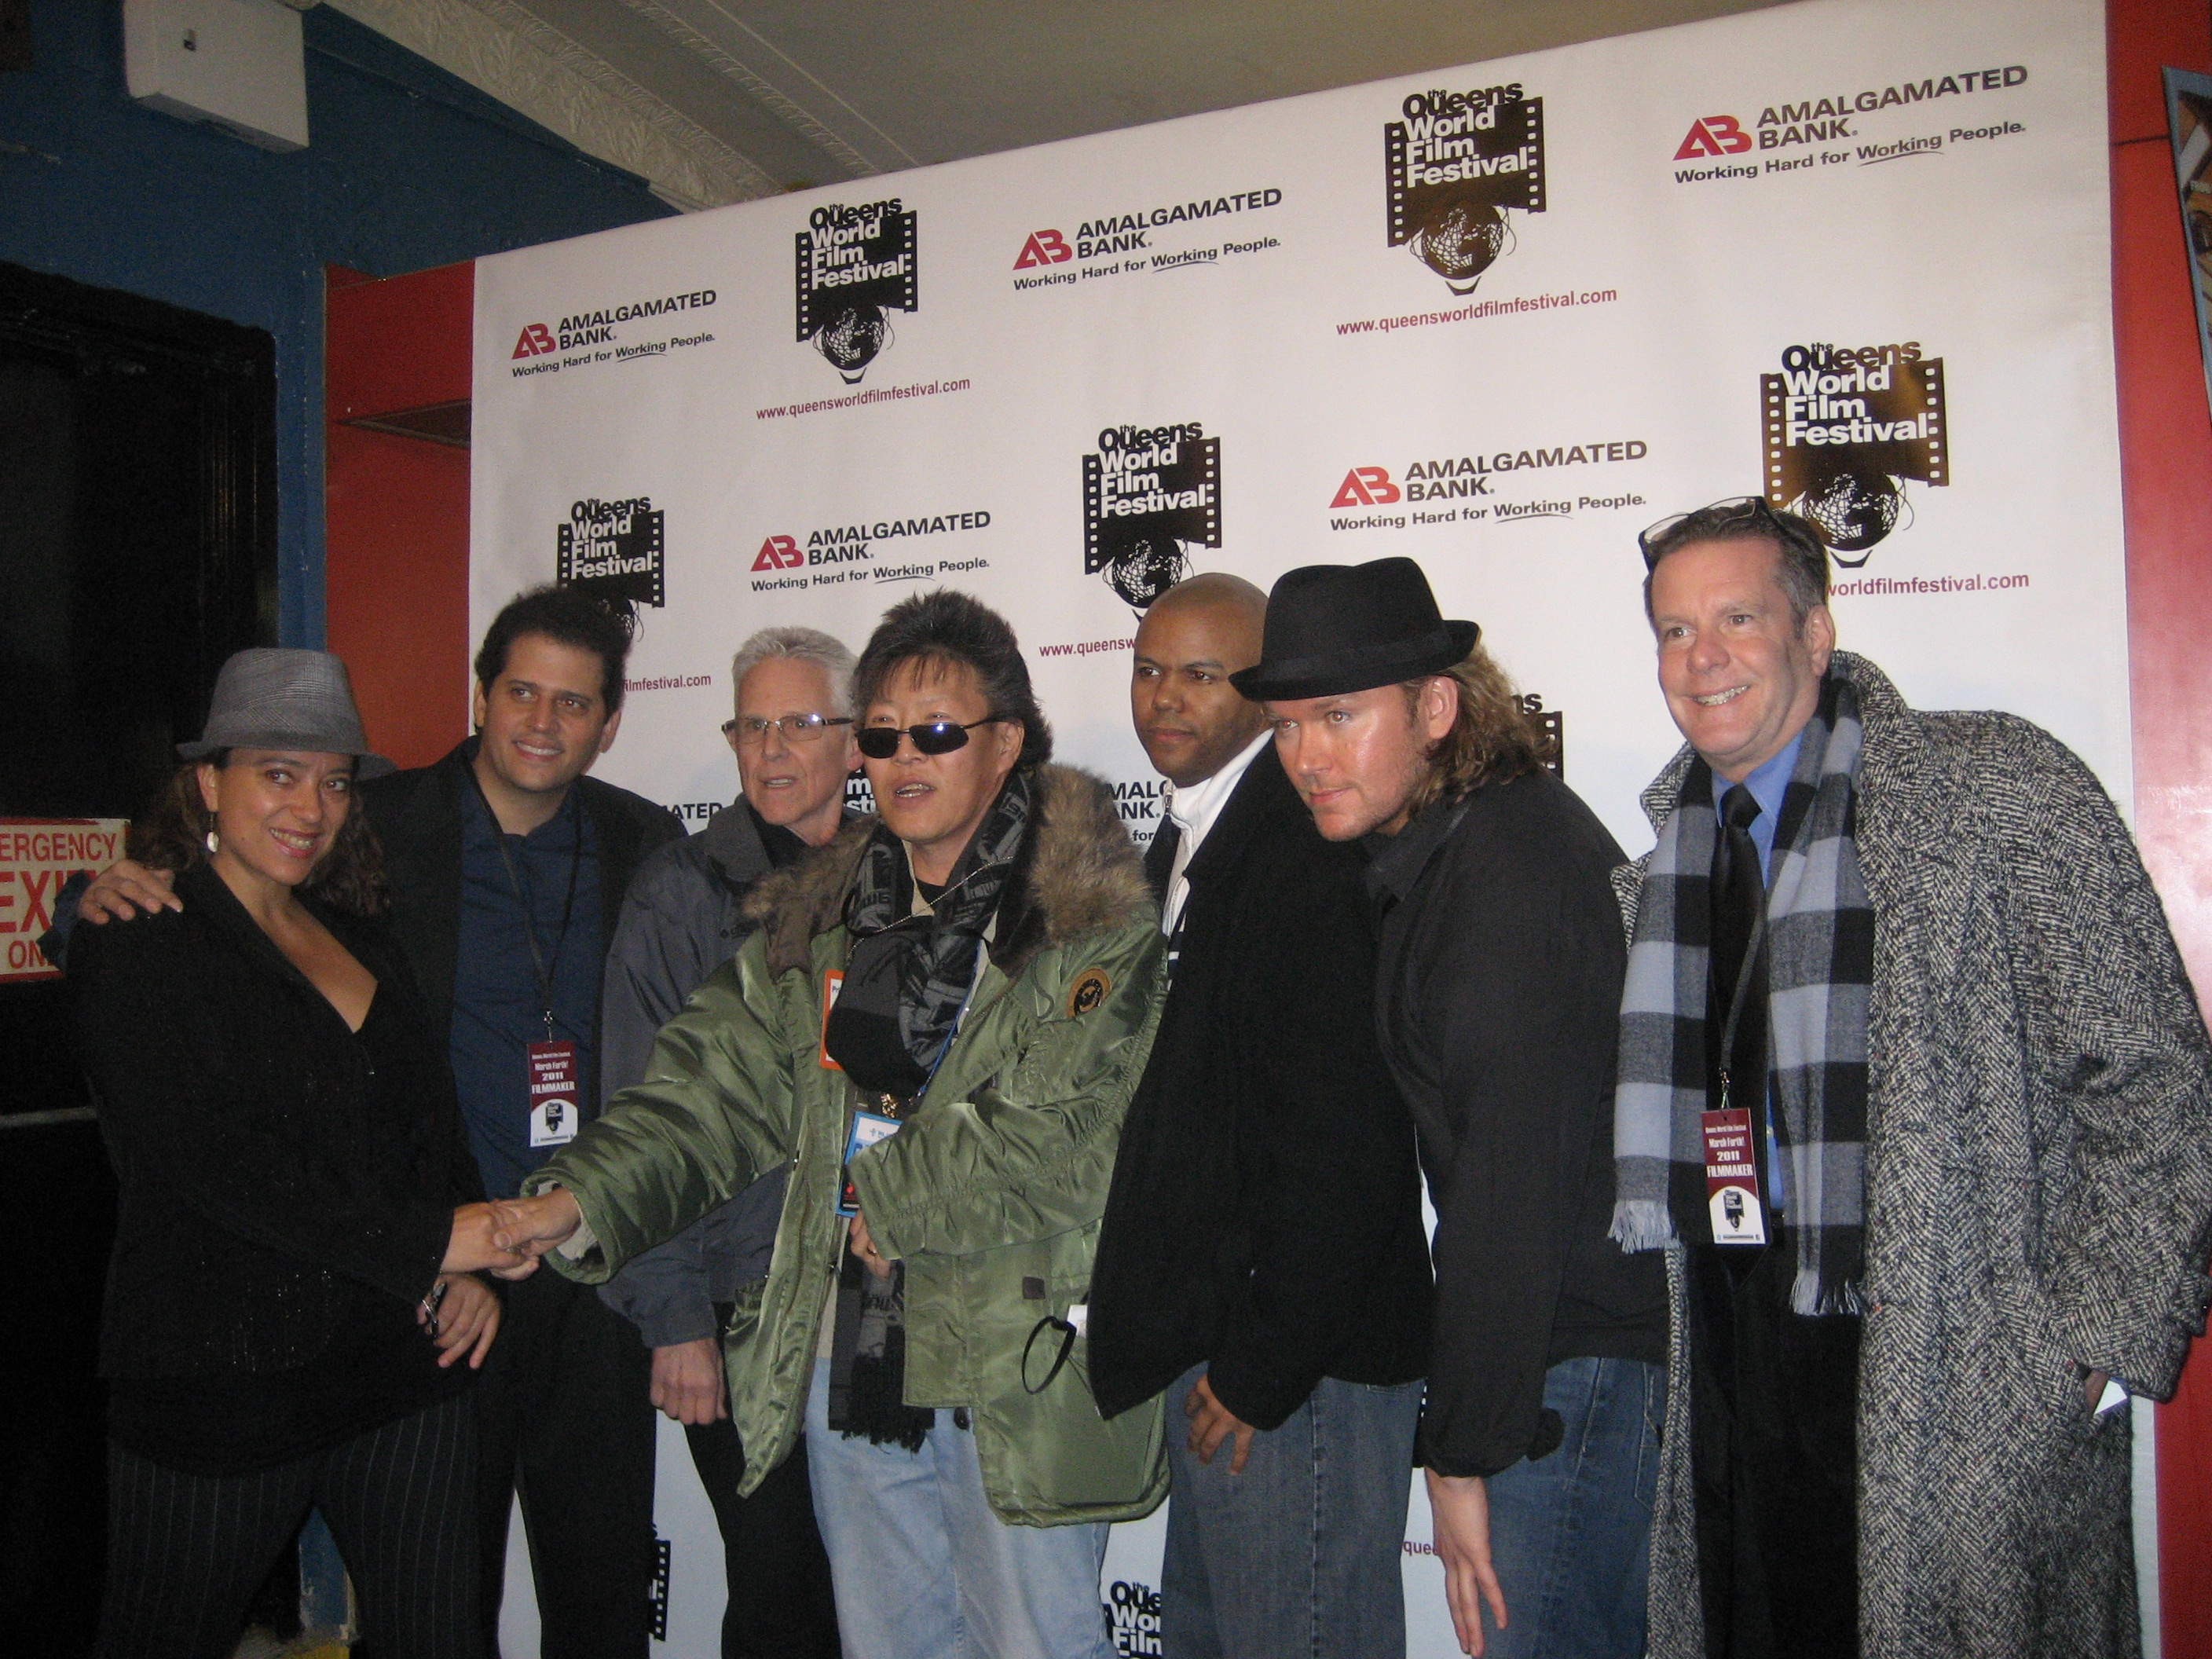 Queens World Film Festival, Opening Night, 03/03/11, Paul Kelly (far right).